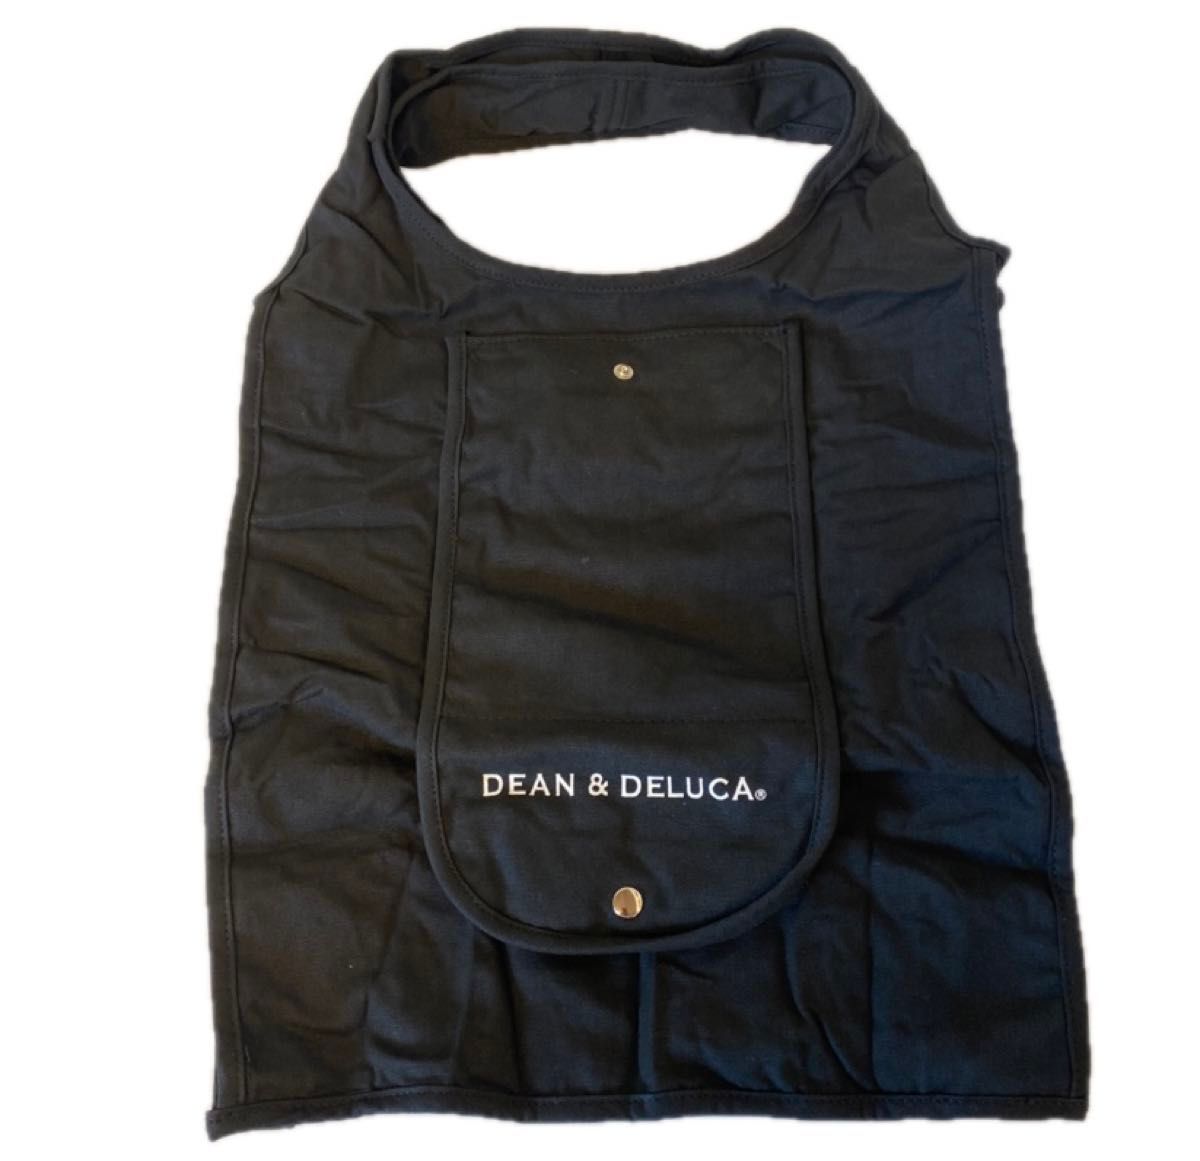 DEAN&DELUCA エコバッグ ブラック 新品未使用 ショッピングバッグ